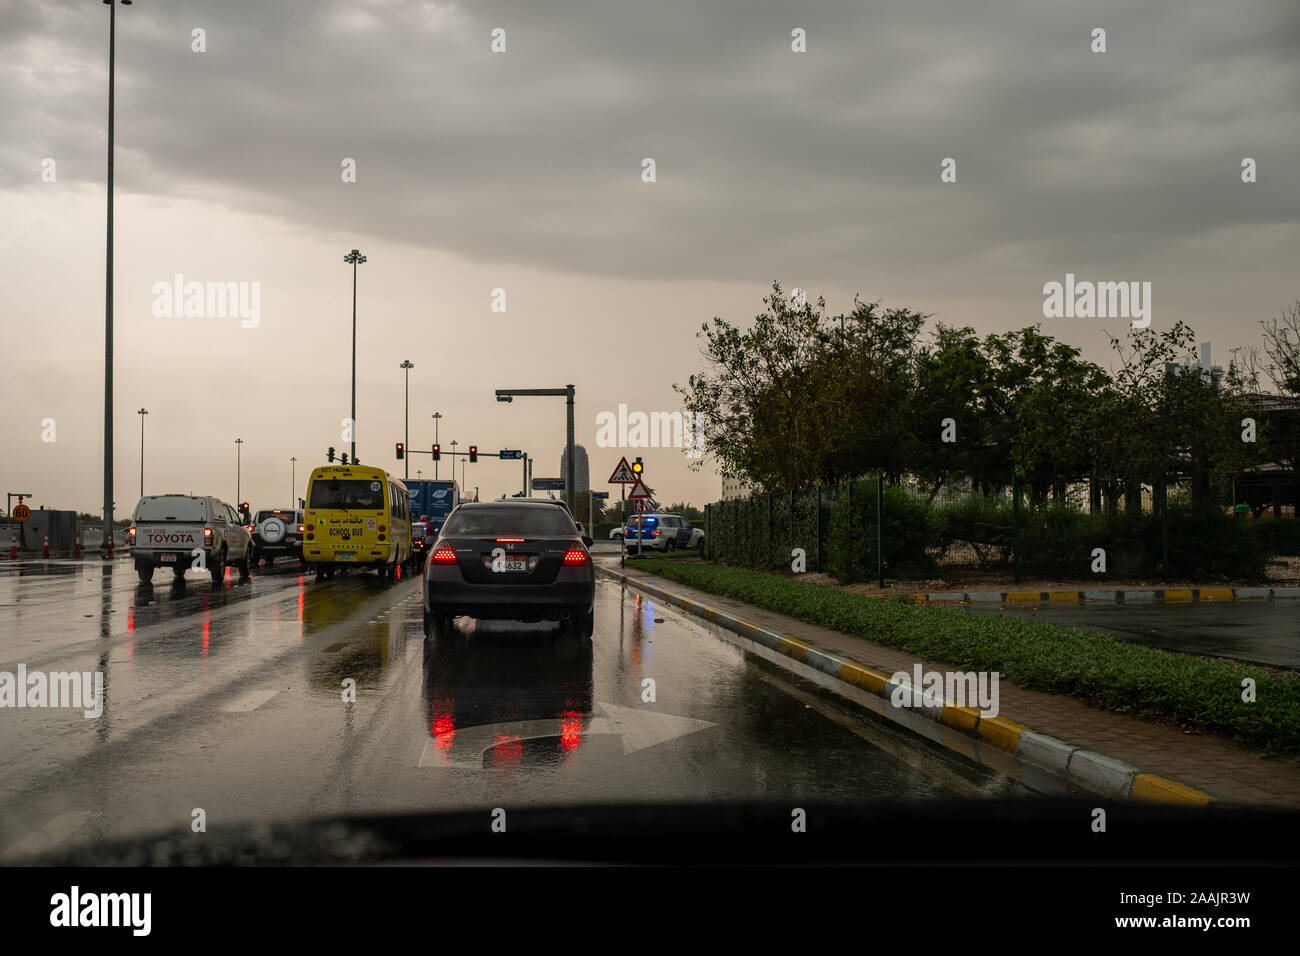 Rain in Abu Dhabi, UAE Stock Photo